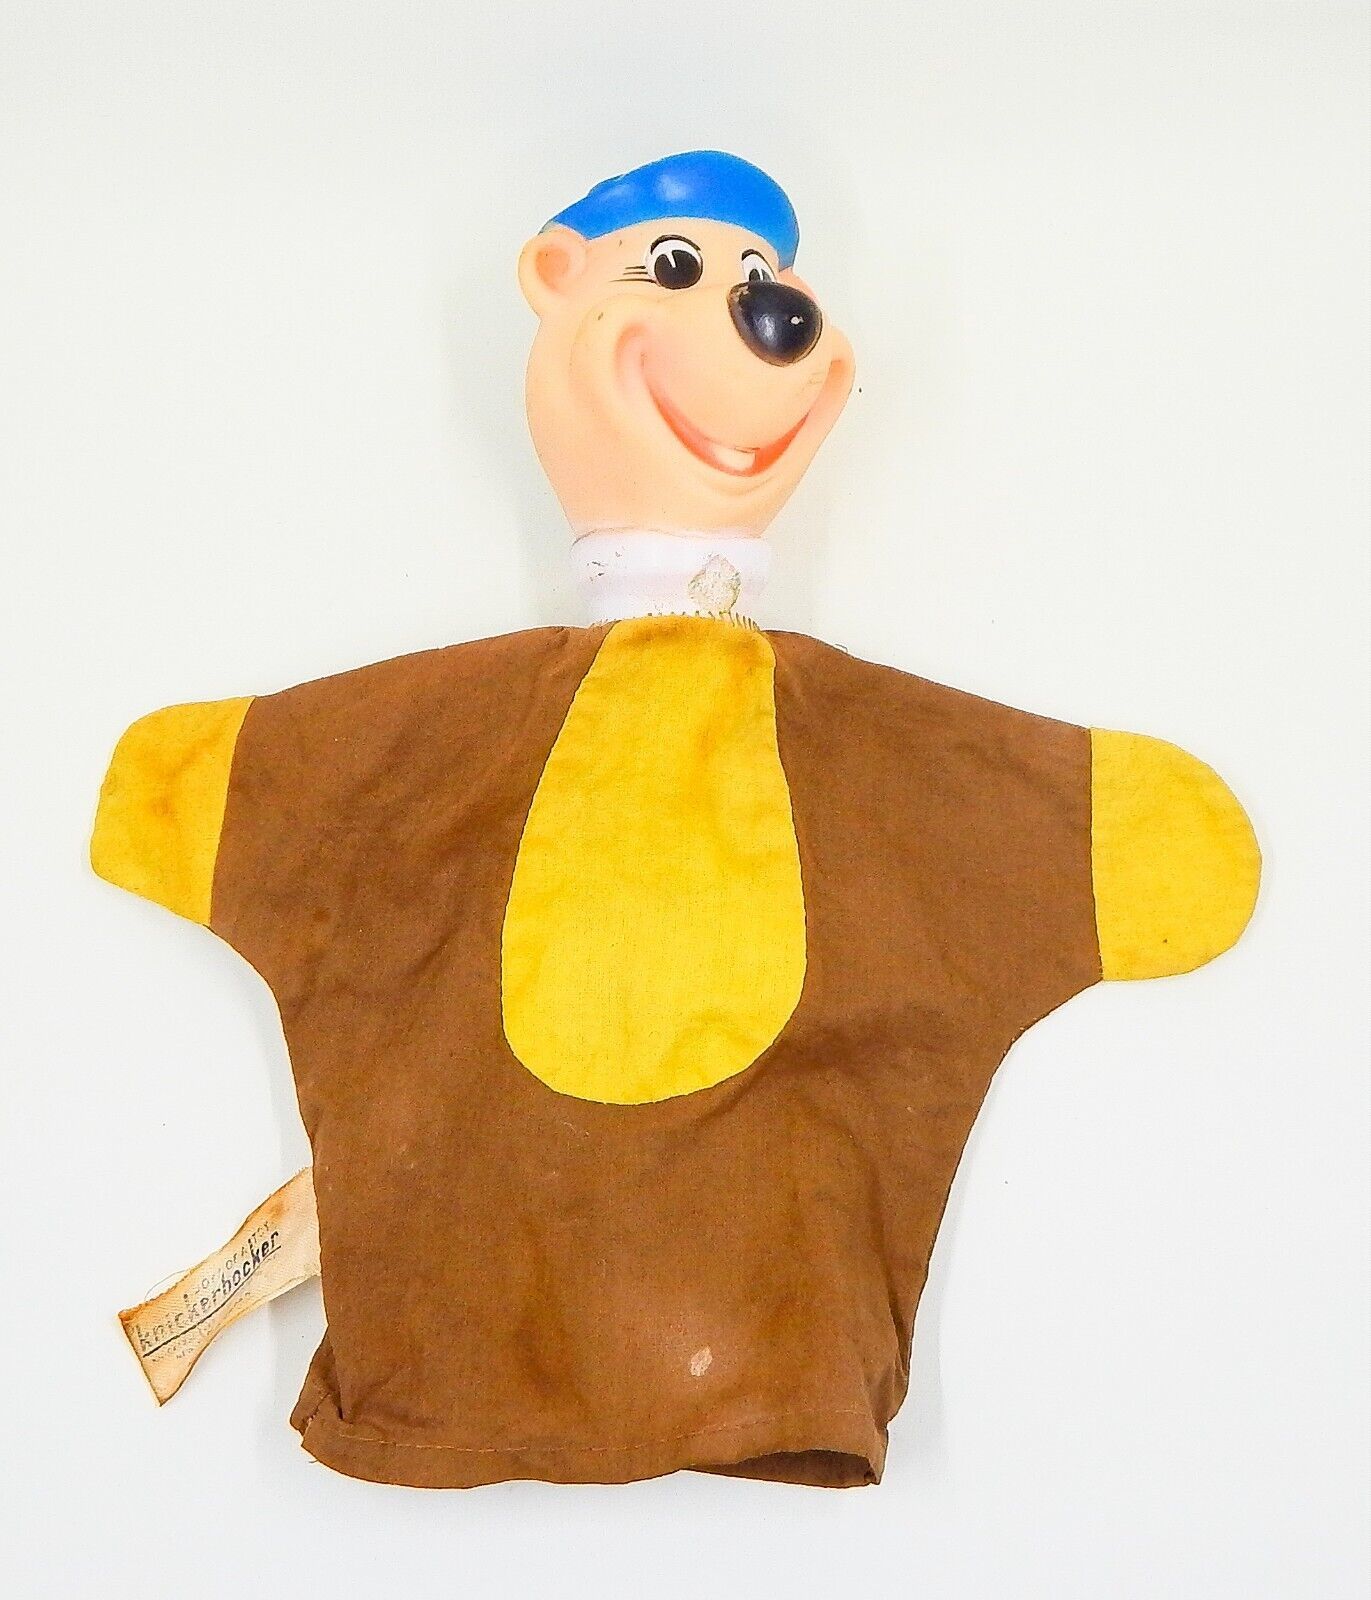 Knickerbocker Hanna Barbera Yogi Bear Hand Puppet 1962 - $12.99